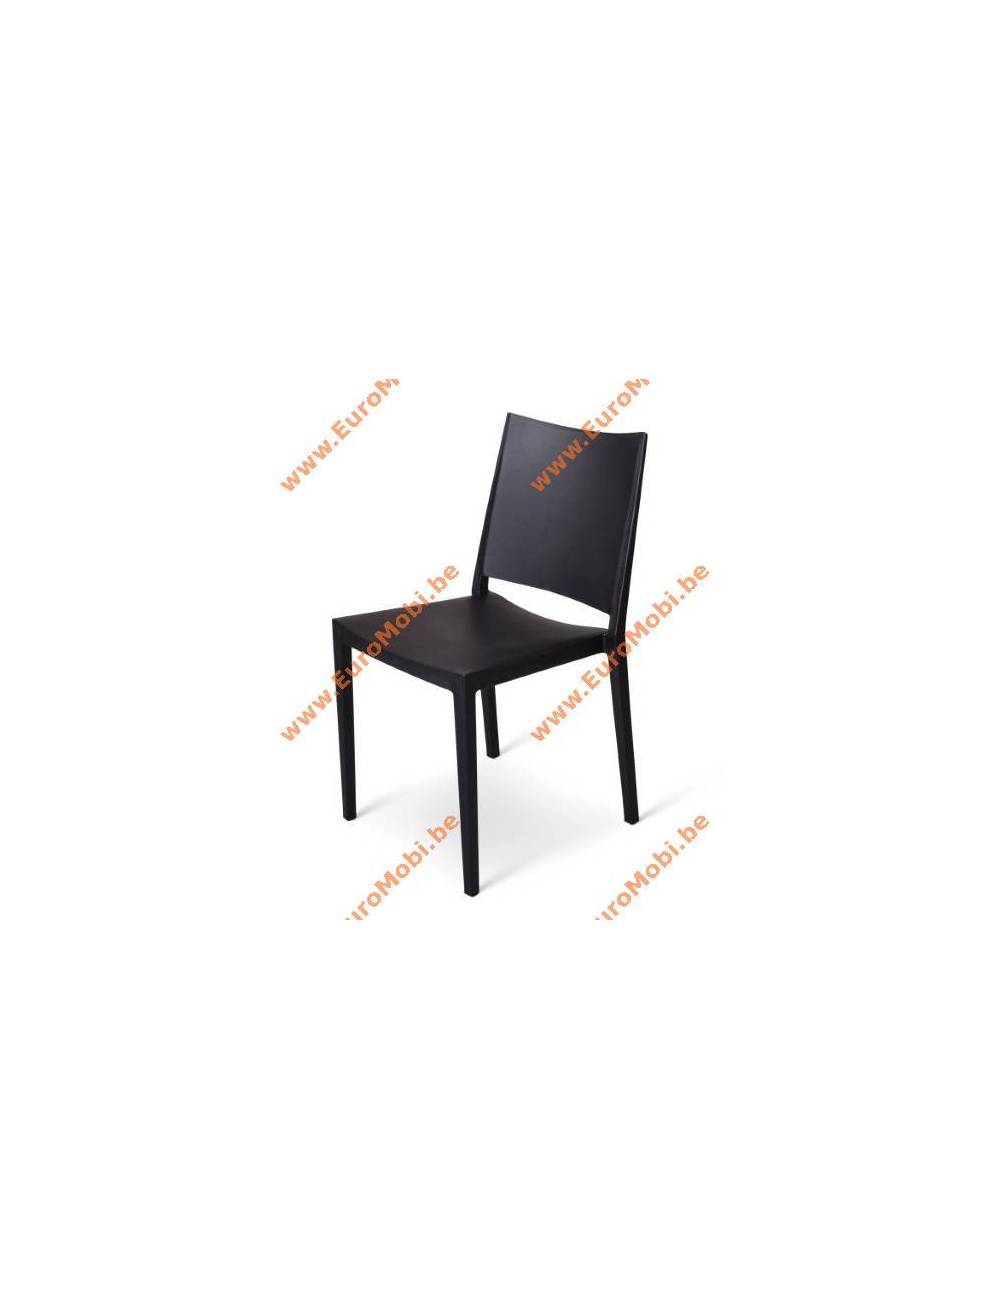 La chaise Corbion, noire. Réf E9r24M